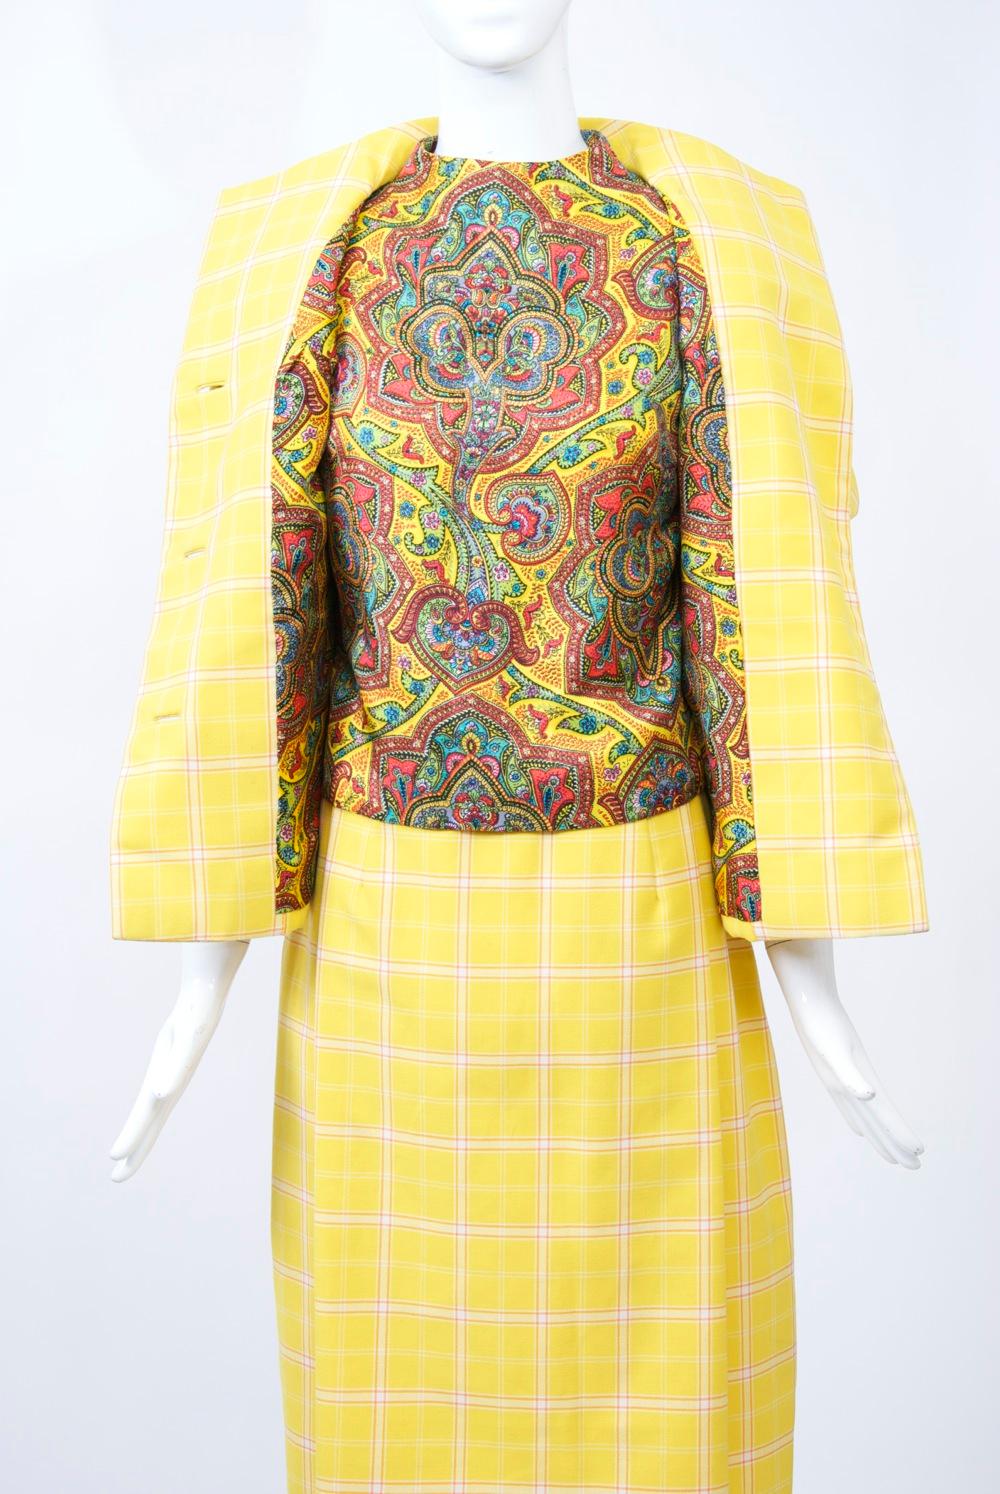 Costume de printemps Bill Blass en laine peignée à carreaux jaunes, la doublure de la veste et l'enveloppe sans manches étant en soie cachemire complémentaire. La veste à manches courtes présente une encolure en entonnoir, des coutures diagonales du